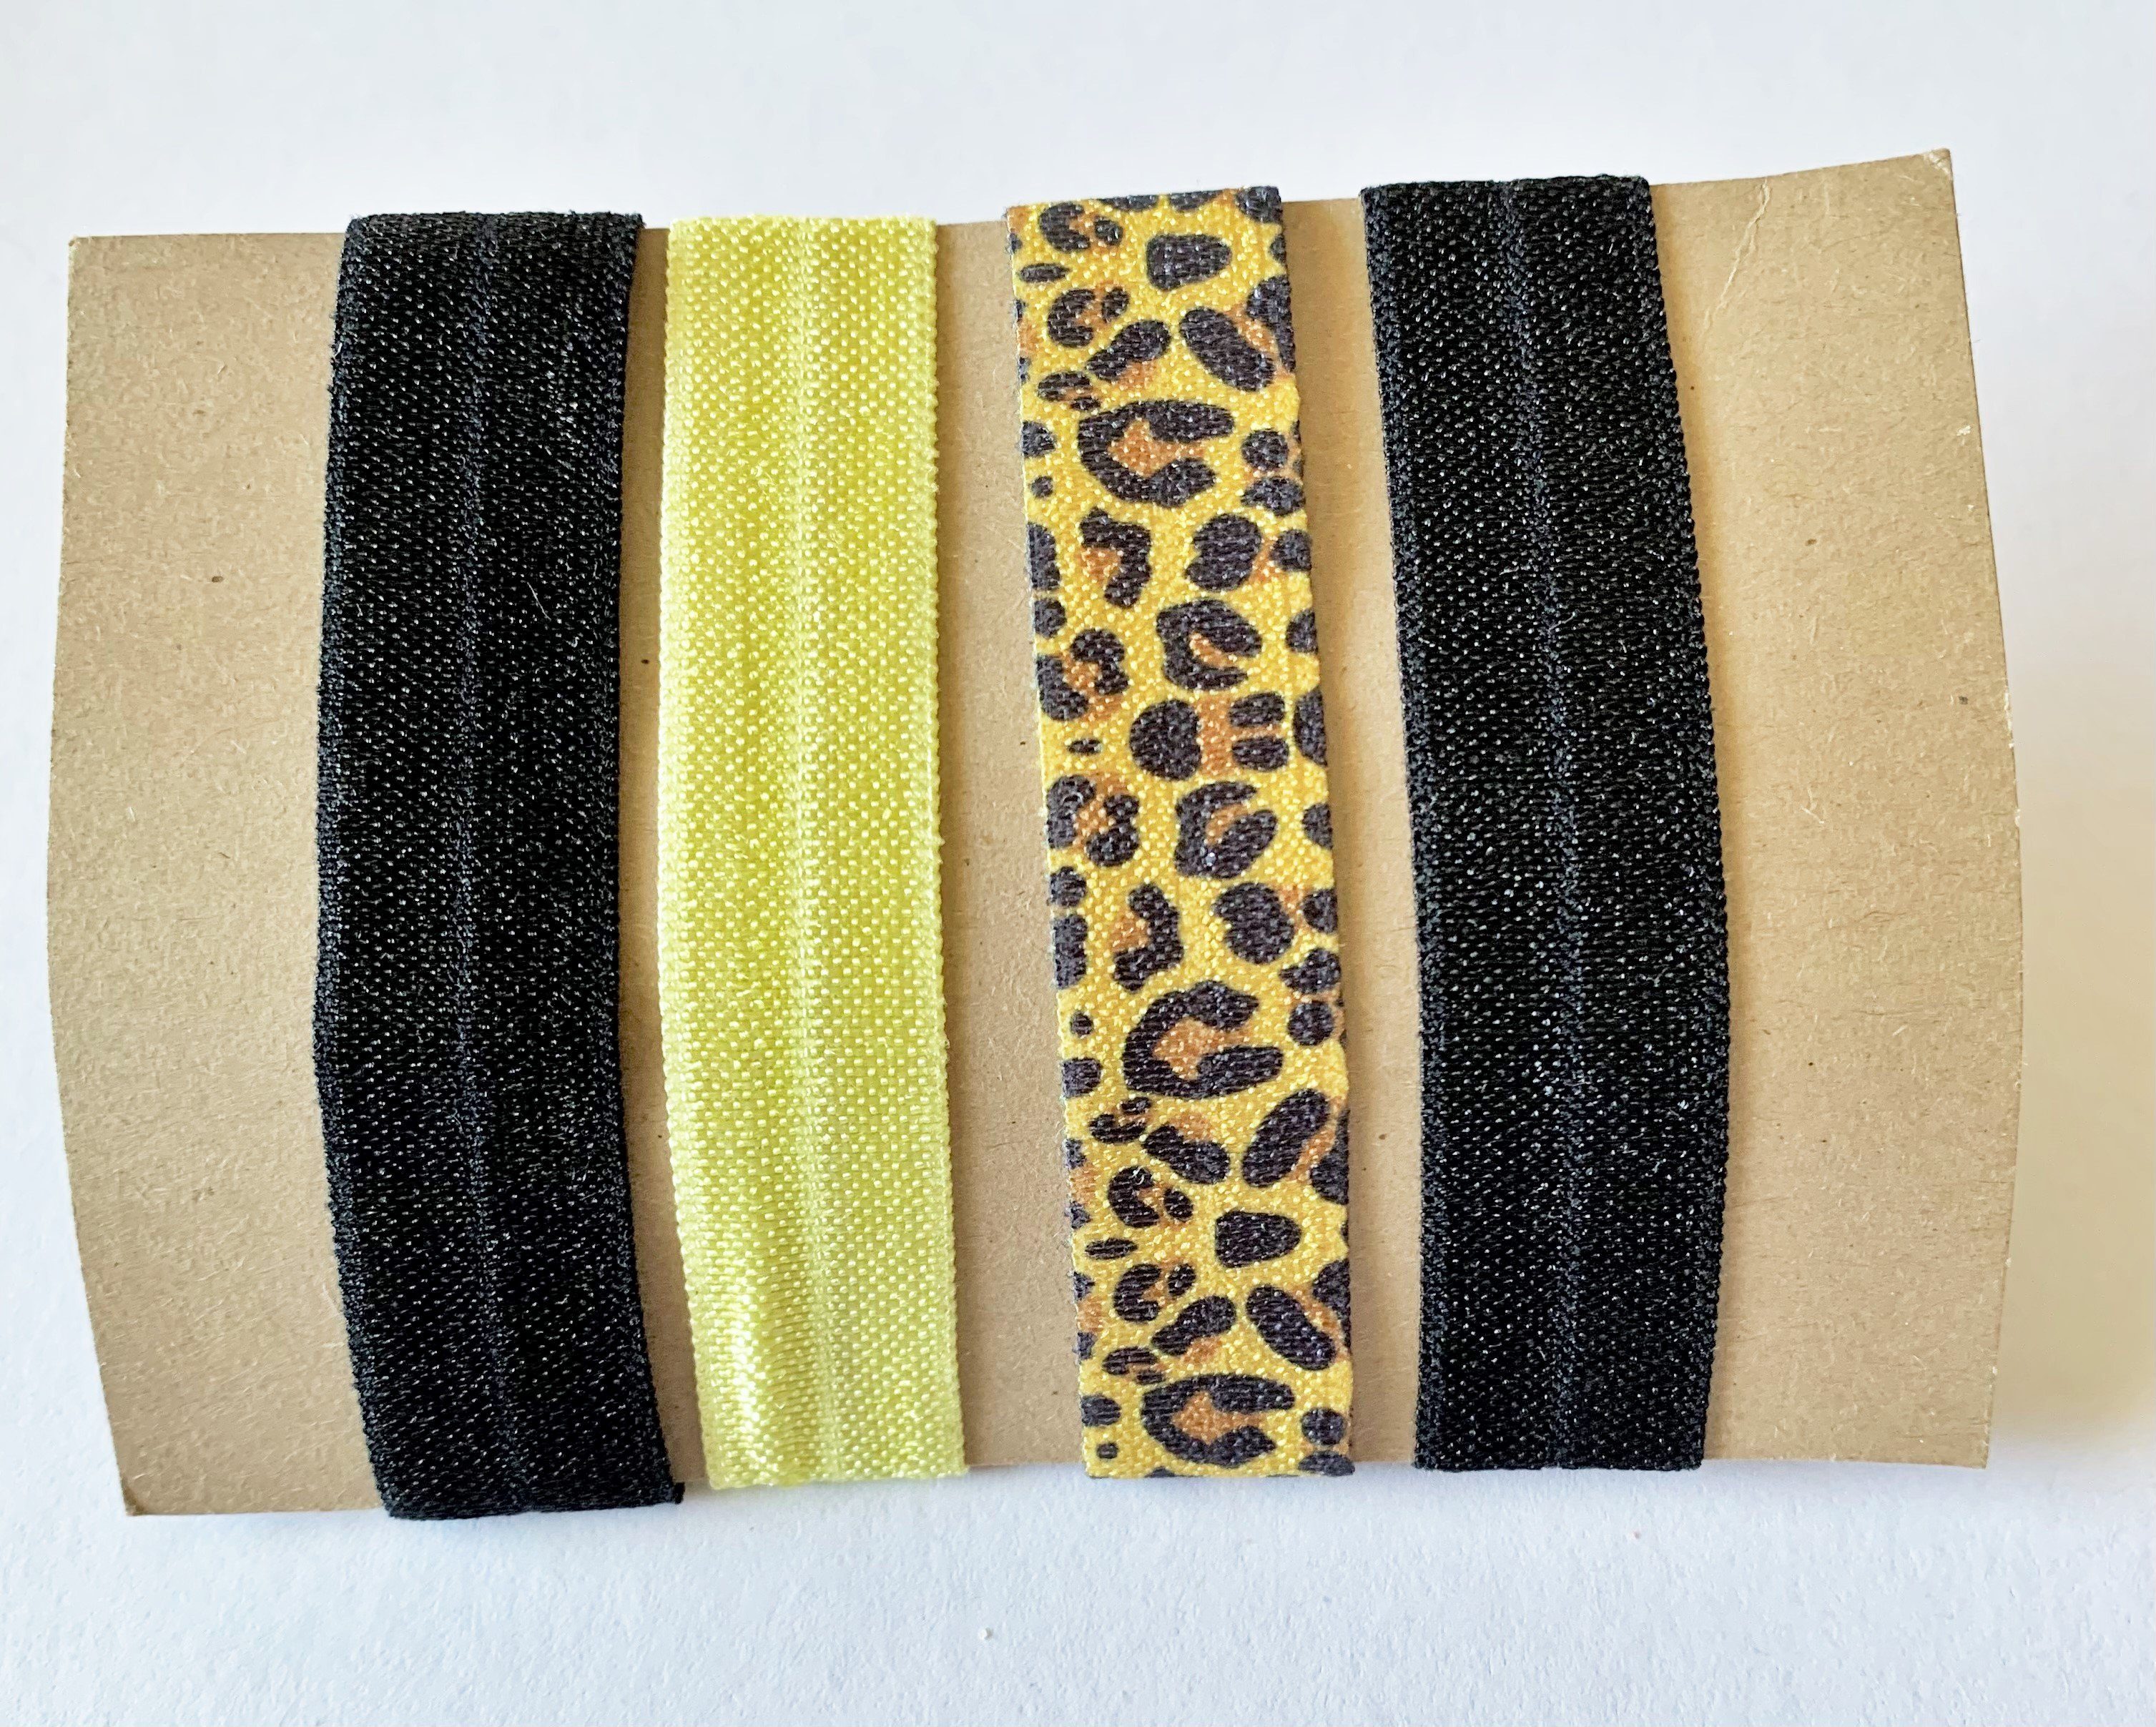 Beliebte Vorschläge LK Trend & tragen. für cooles Das Armband, Zopfband oder läßt sich Leopard Festival elastisches Haarband als Style perfekt Armband Armband, Sehr angesagt! die Hellgelb Frisur, Haarband